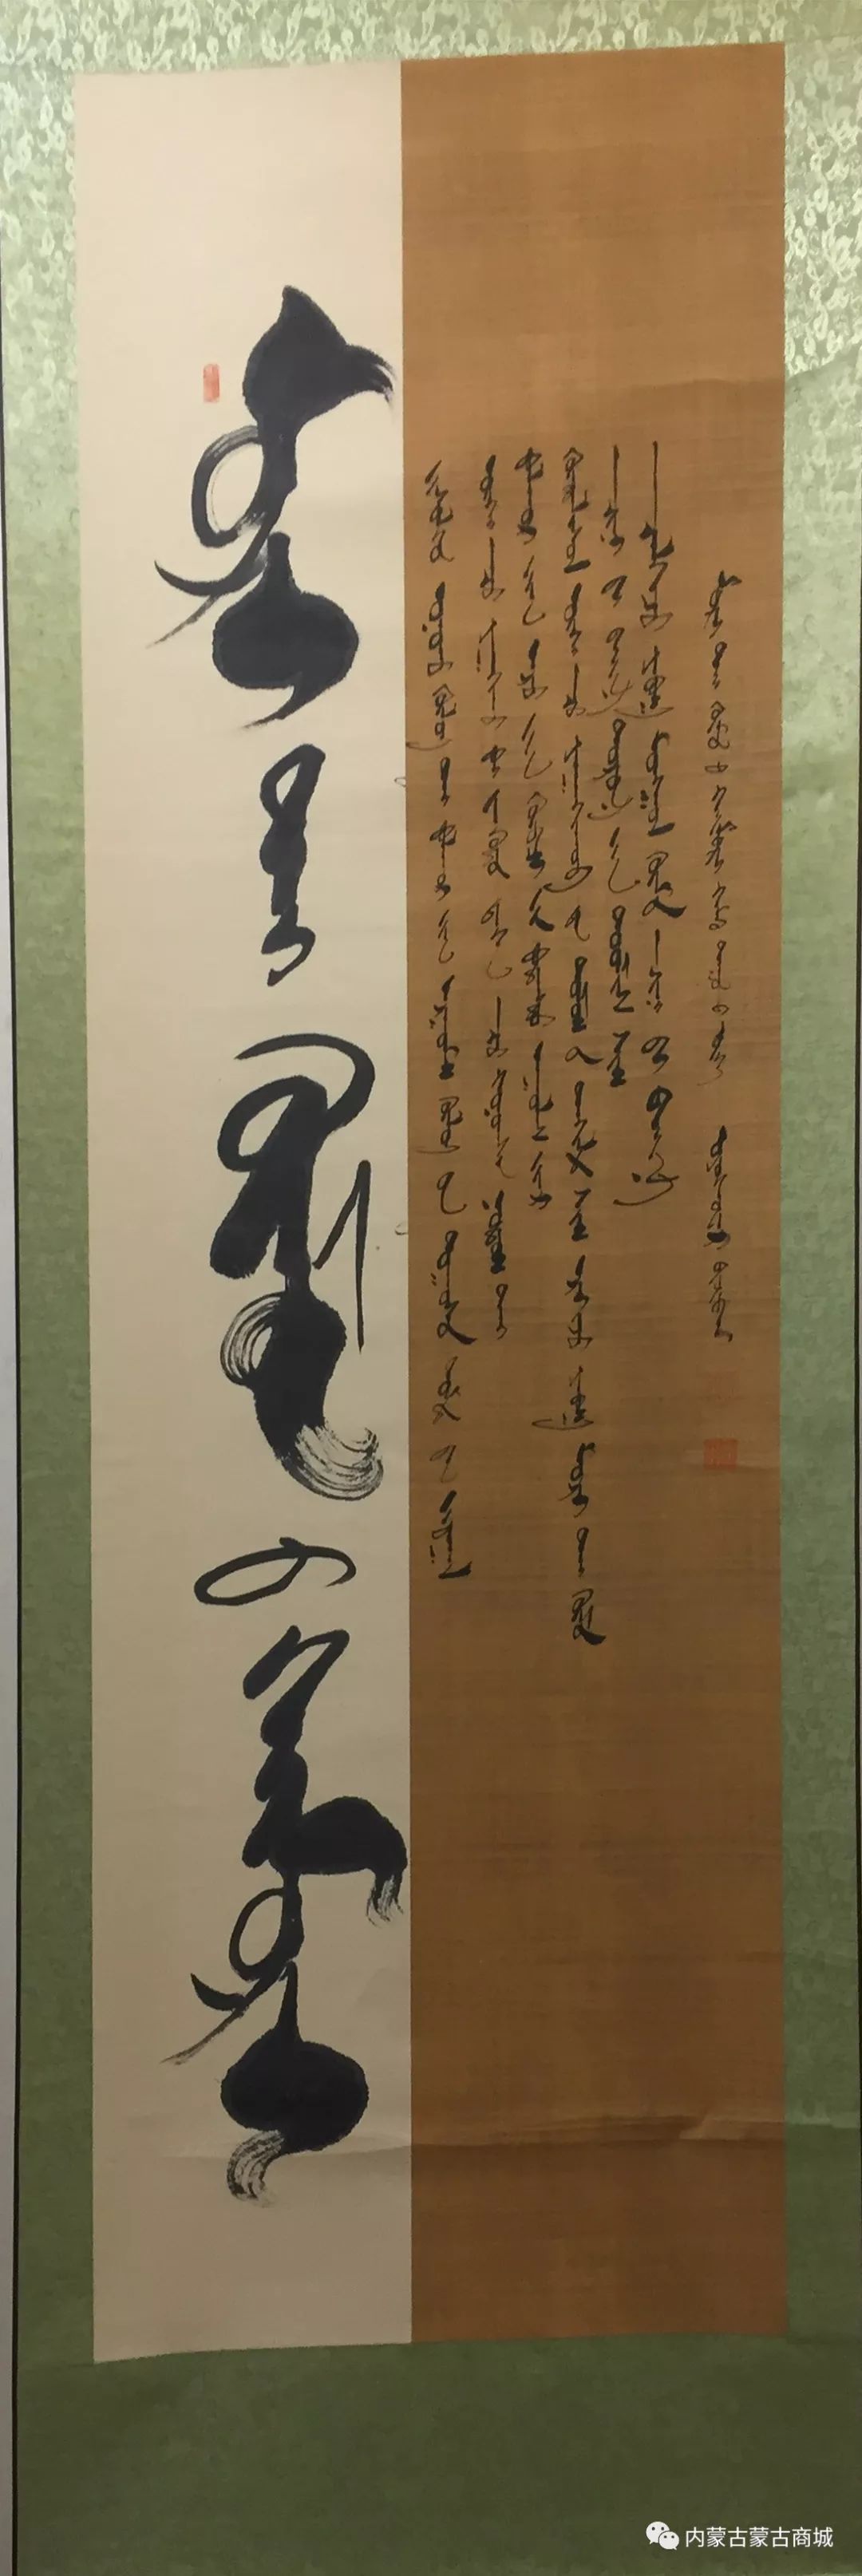 【第五期】蒙古文书法作品 第9张